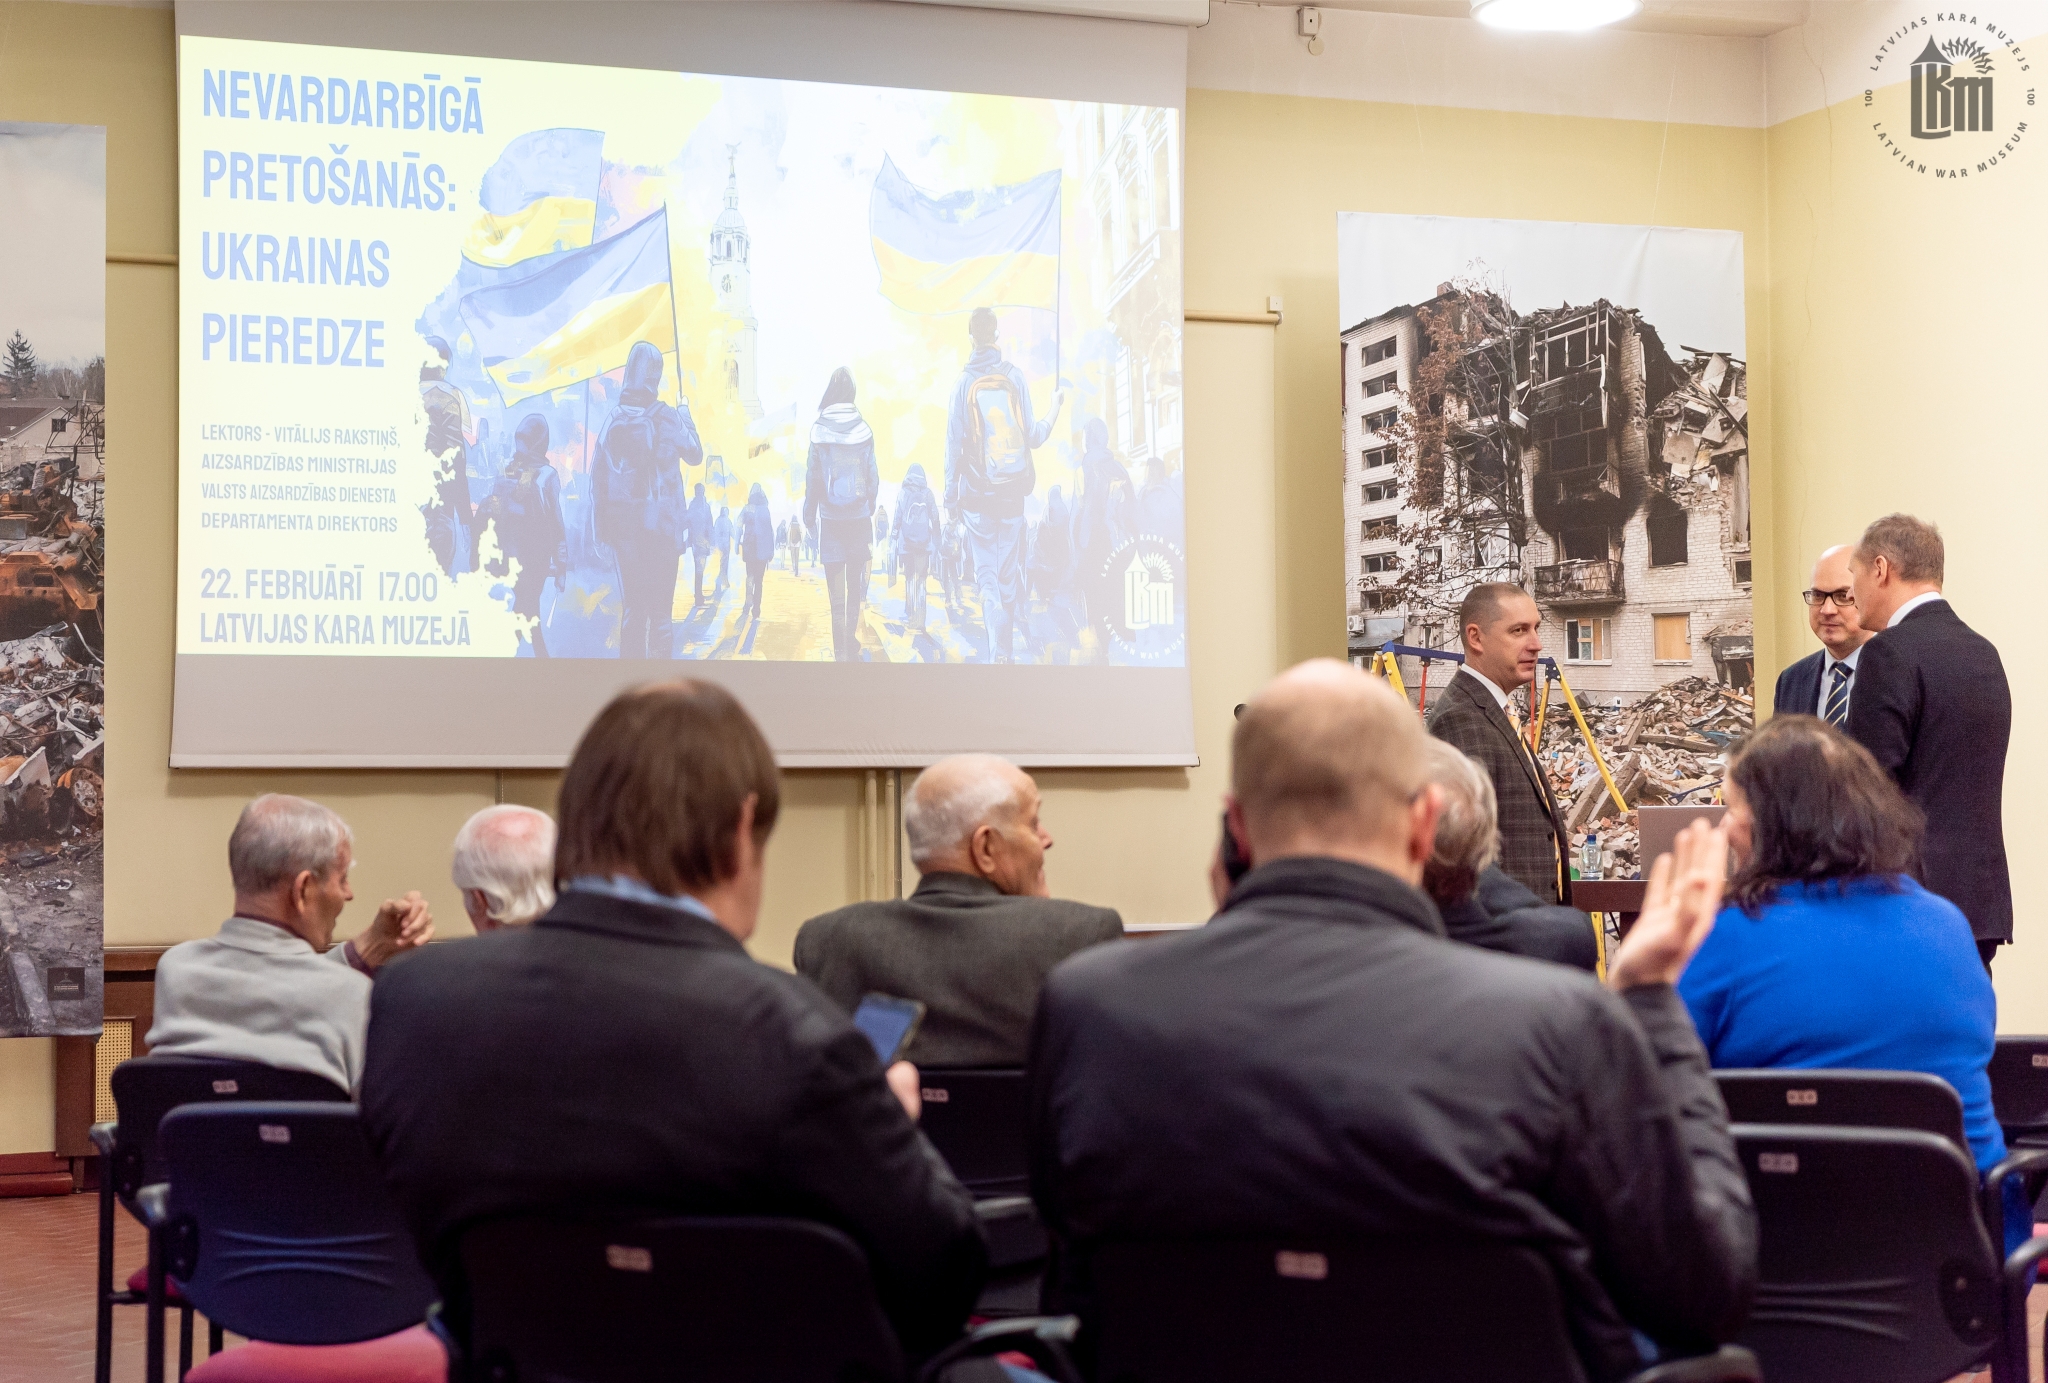 Lekcija par Ukrainas nevardarbīgu pretošanos